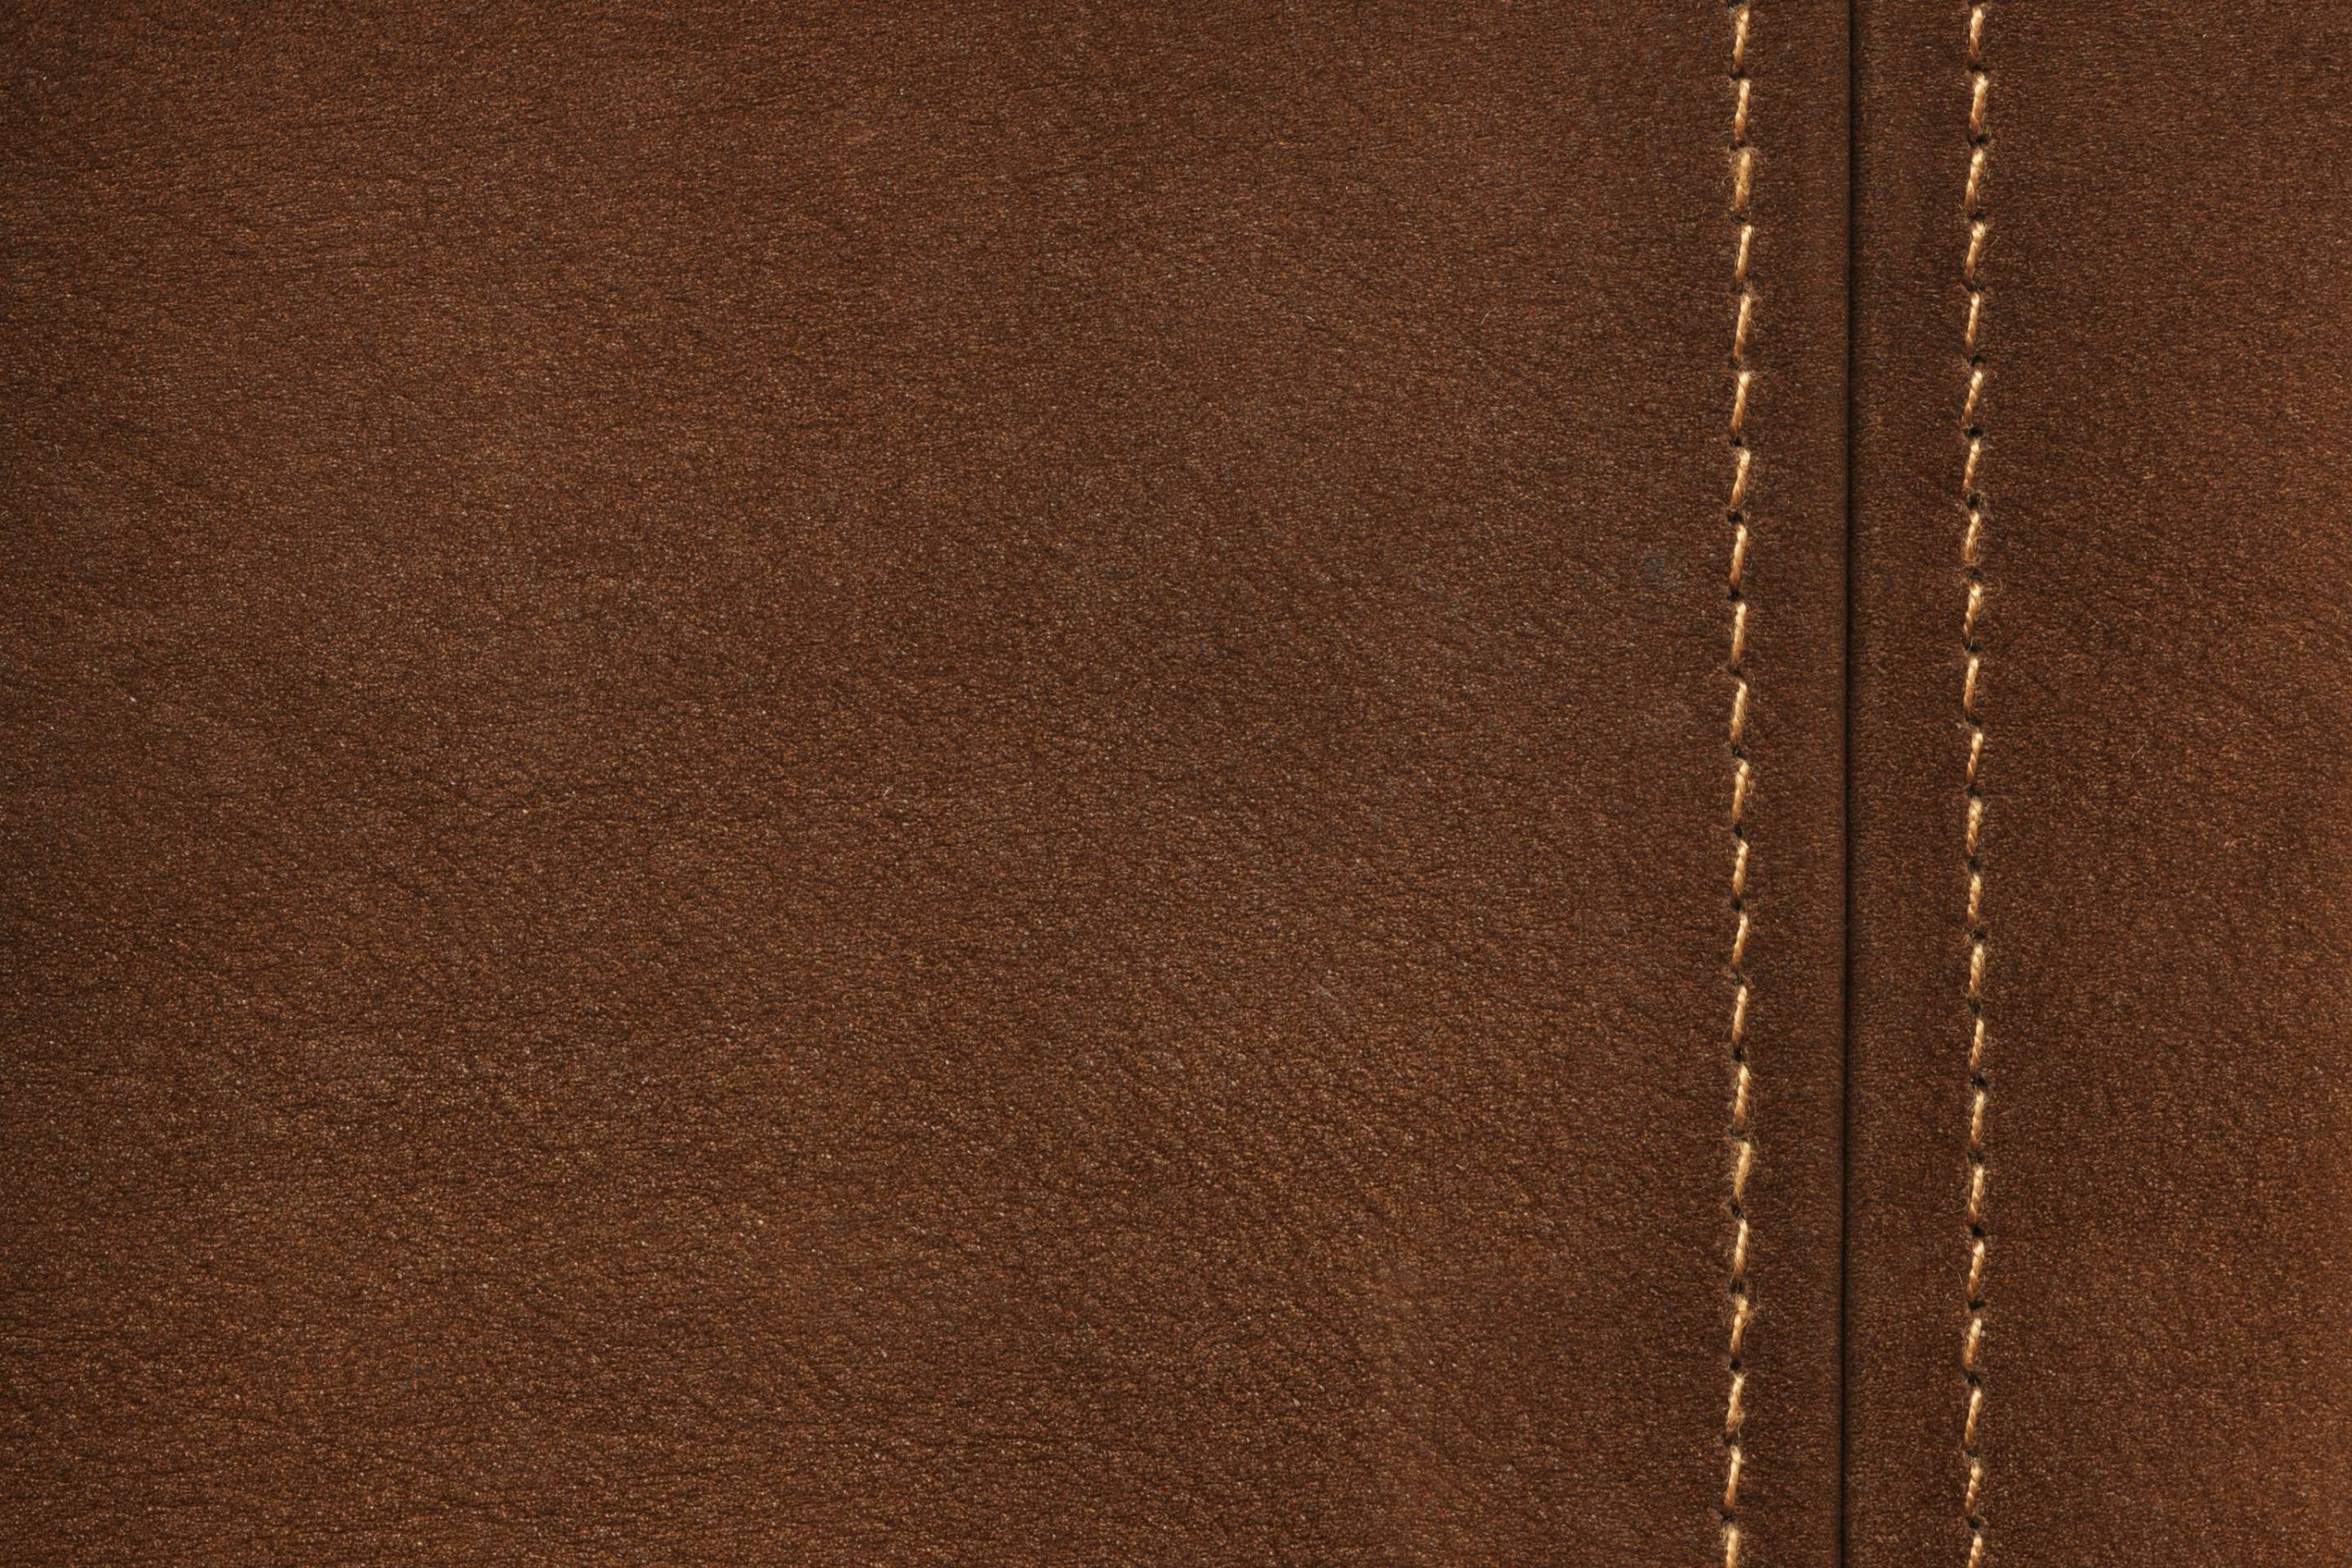 Обои Brown Leather with Seam 2880x1920